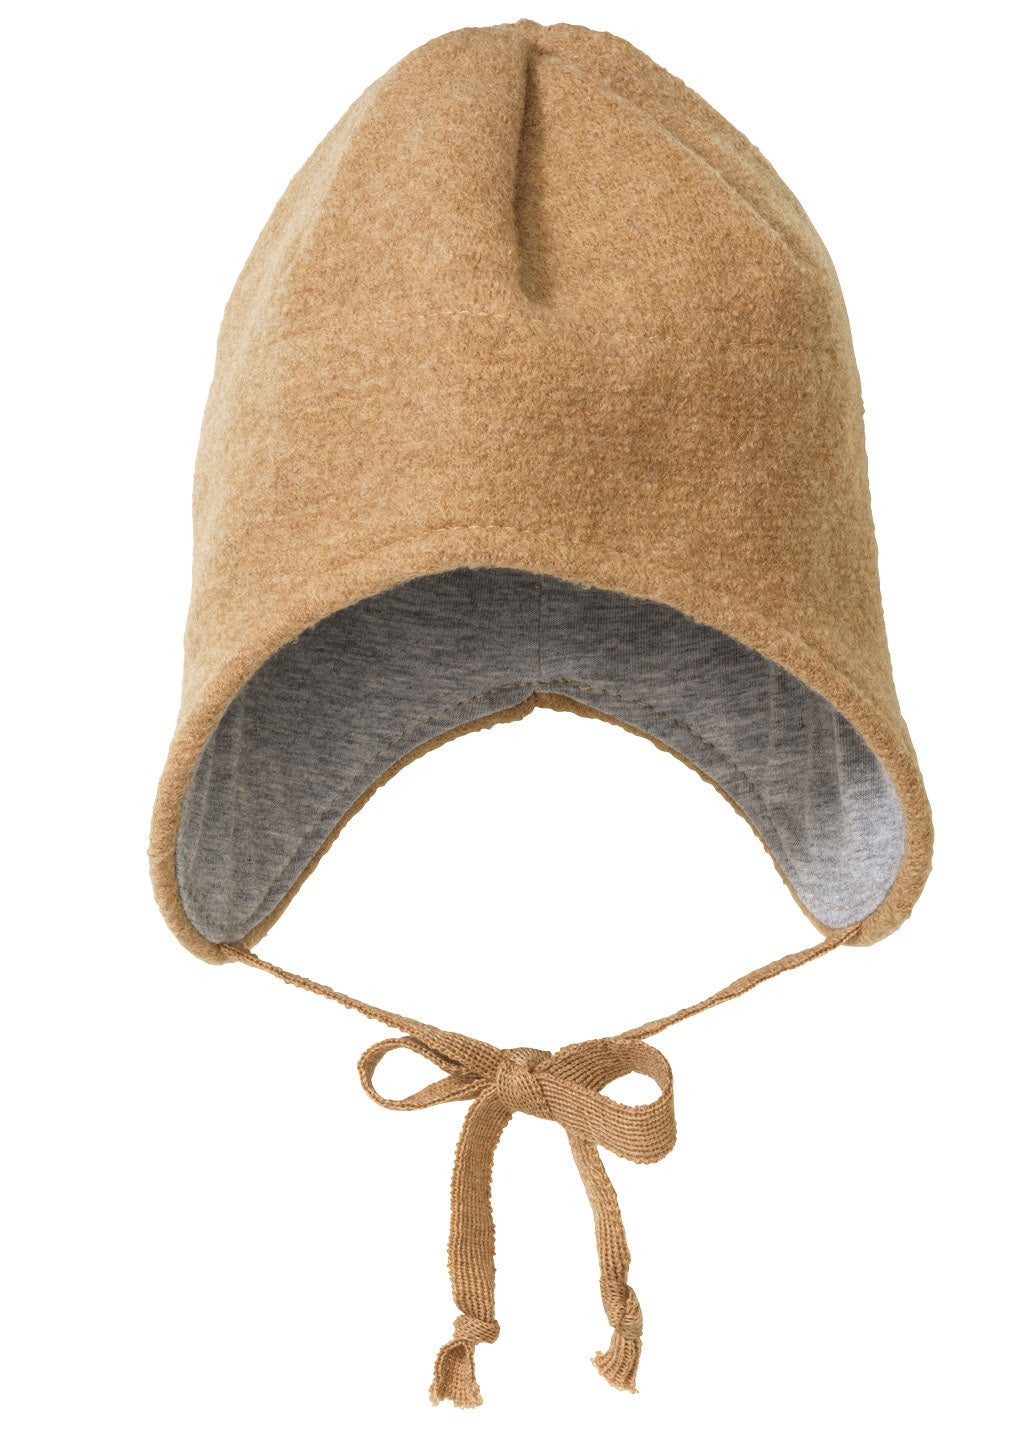 Boiled wool hat